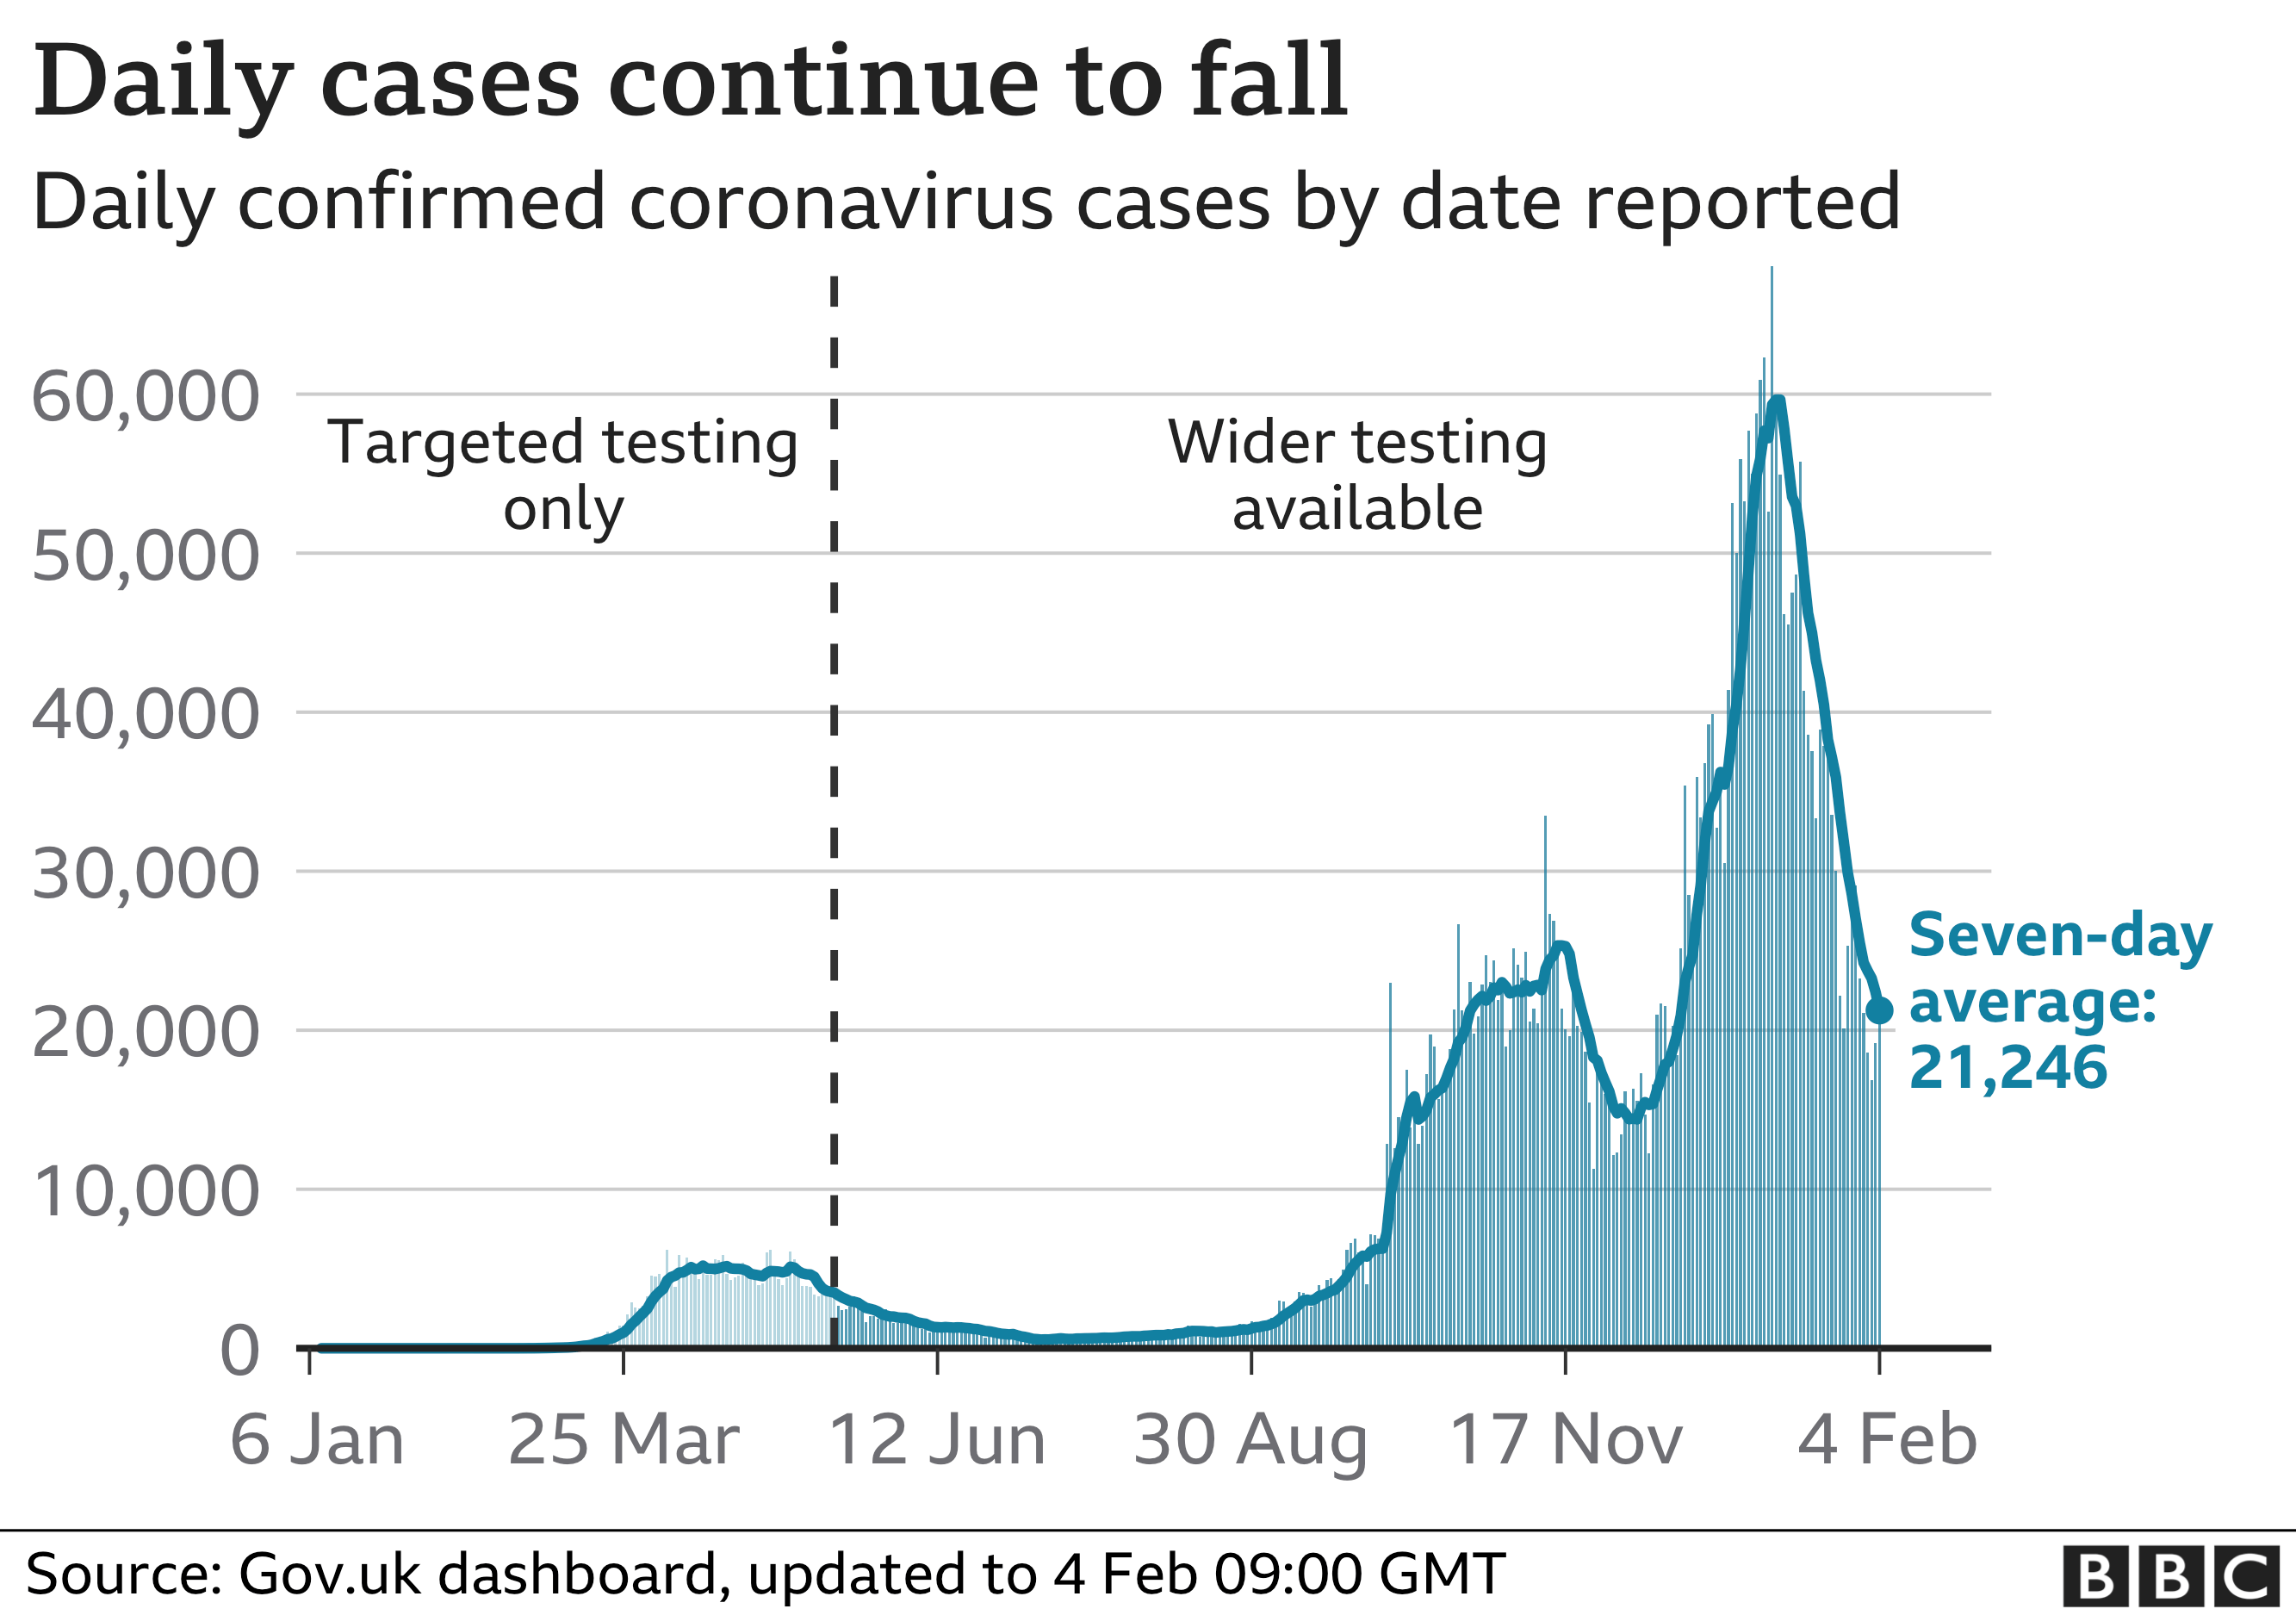 График показывает, что ежедневные случаи продолжают падать. Обновлено 4 февраля.